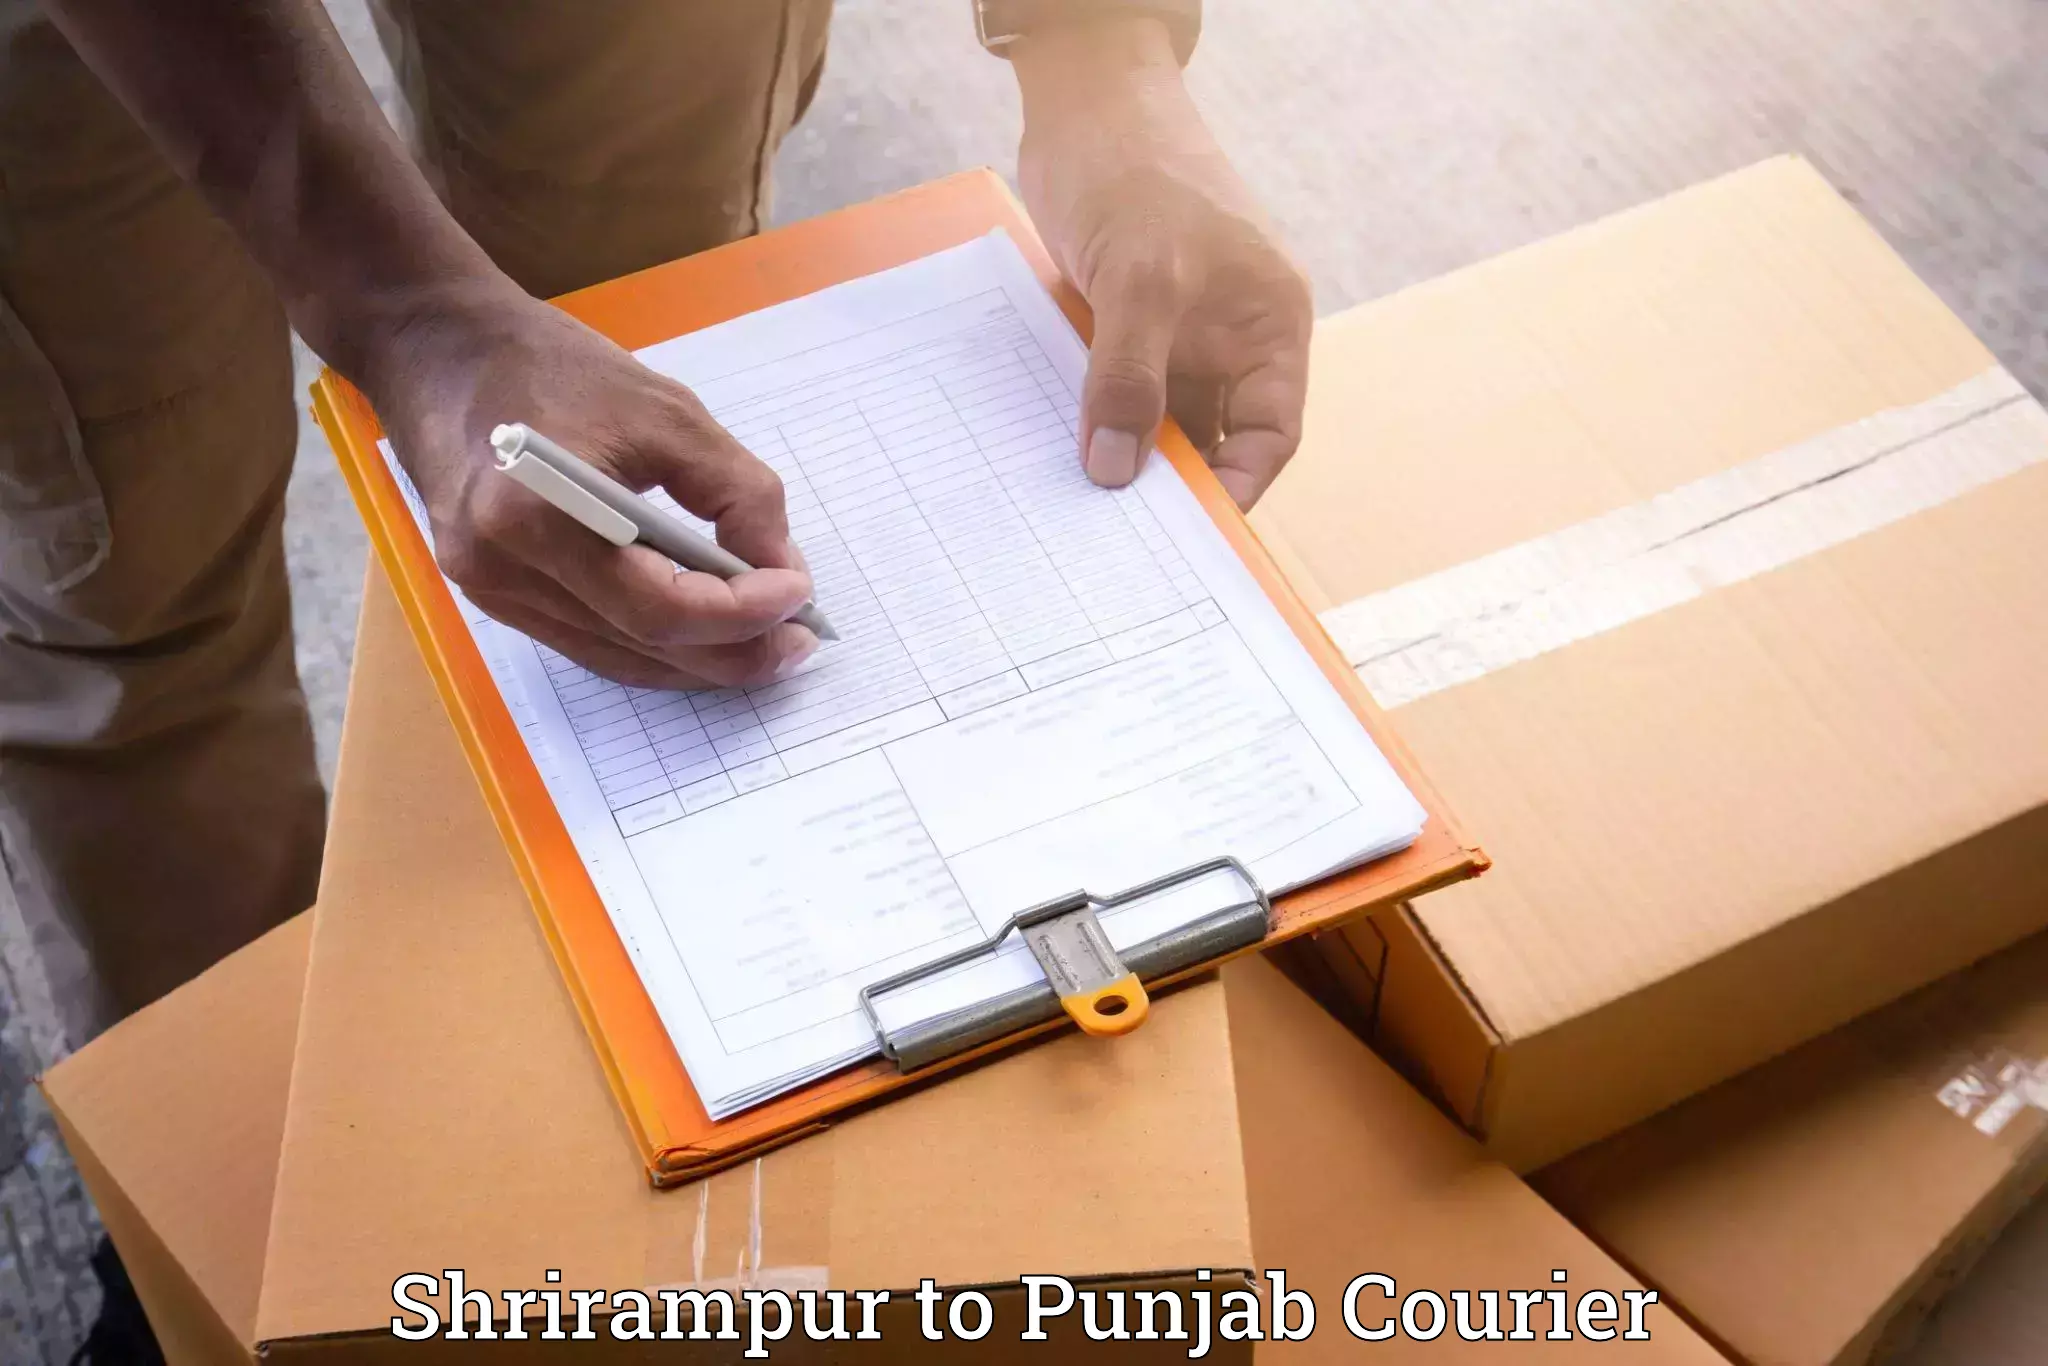 Furniture shipping services Shrirampur to Punjab